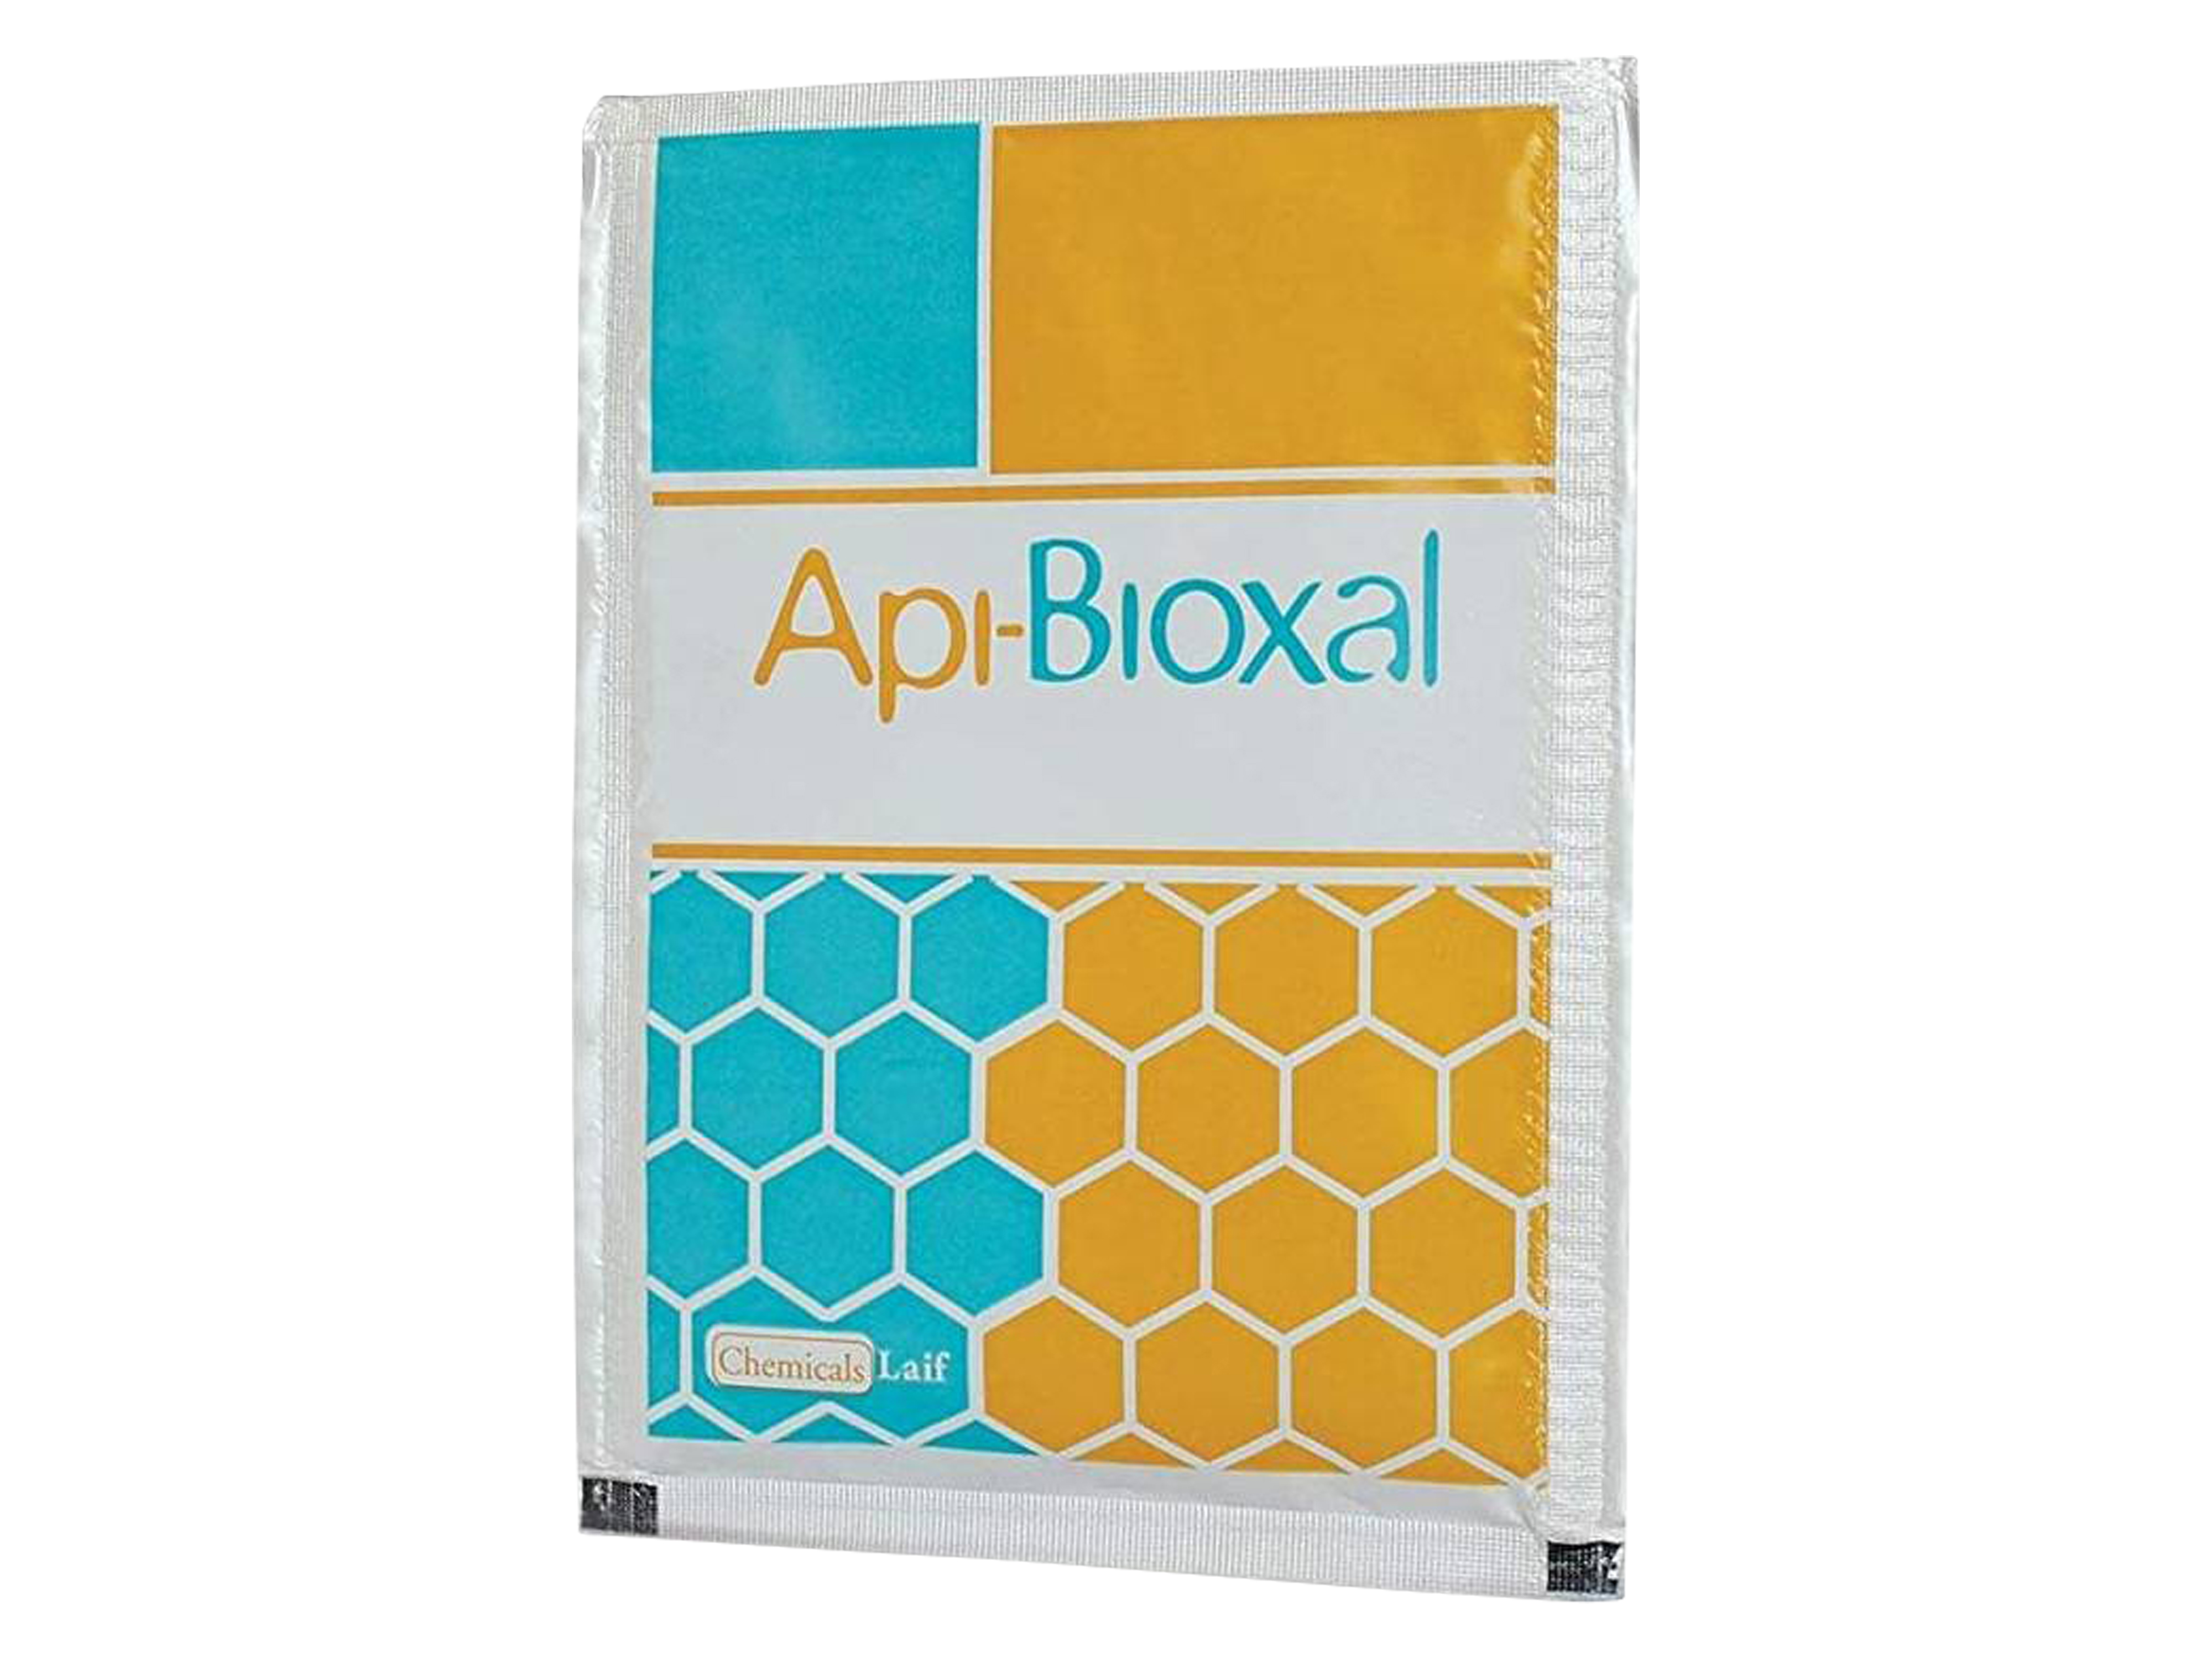 Api-Bioxal Vet pulver til oppløsning 886mg/g, 35 gram (dosepose)